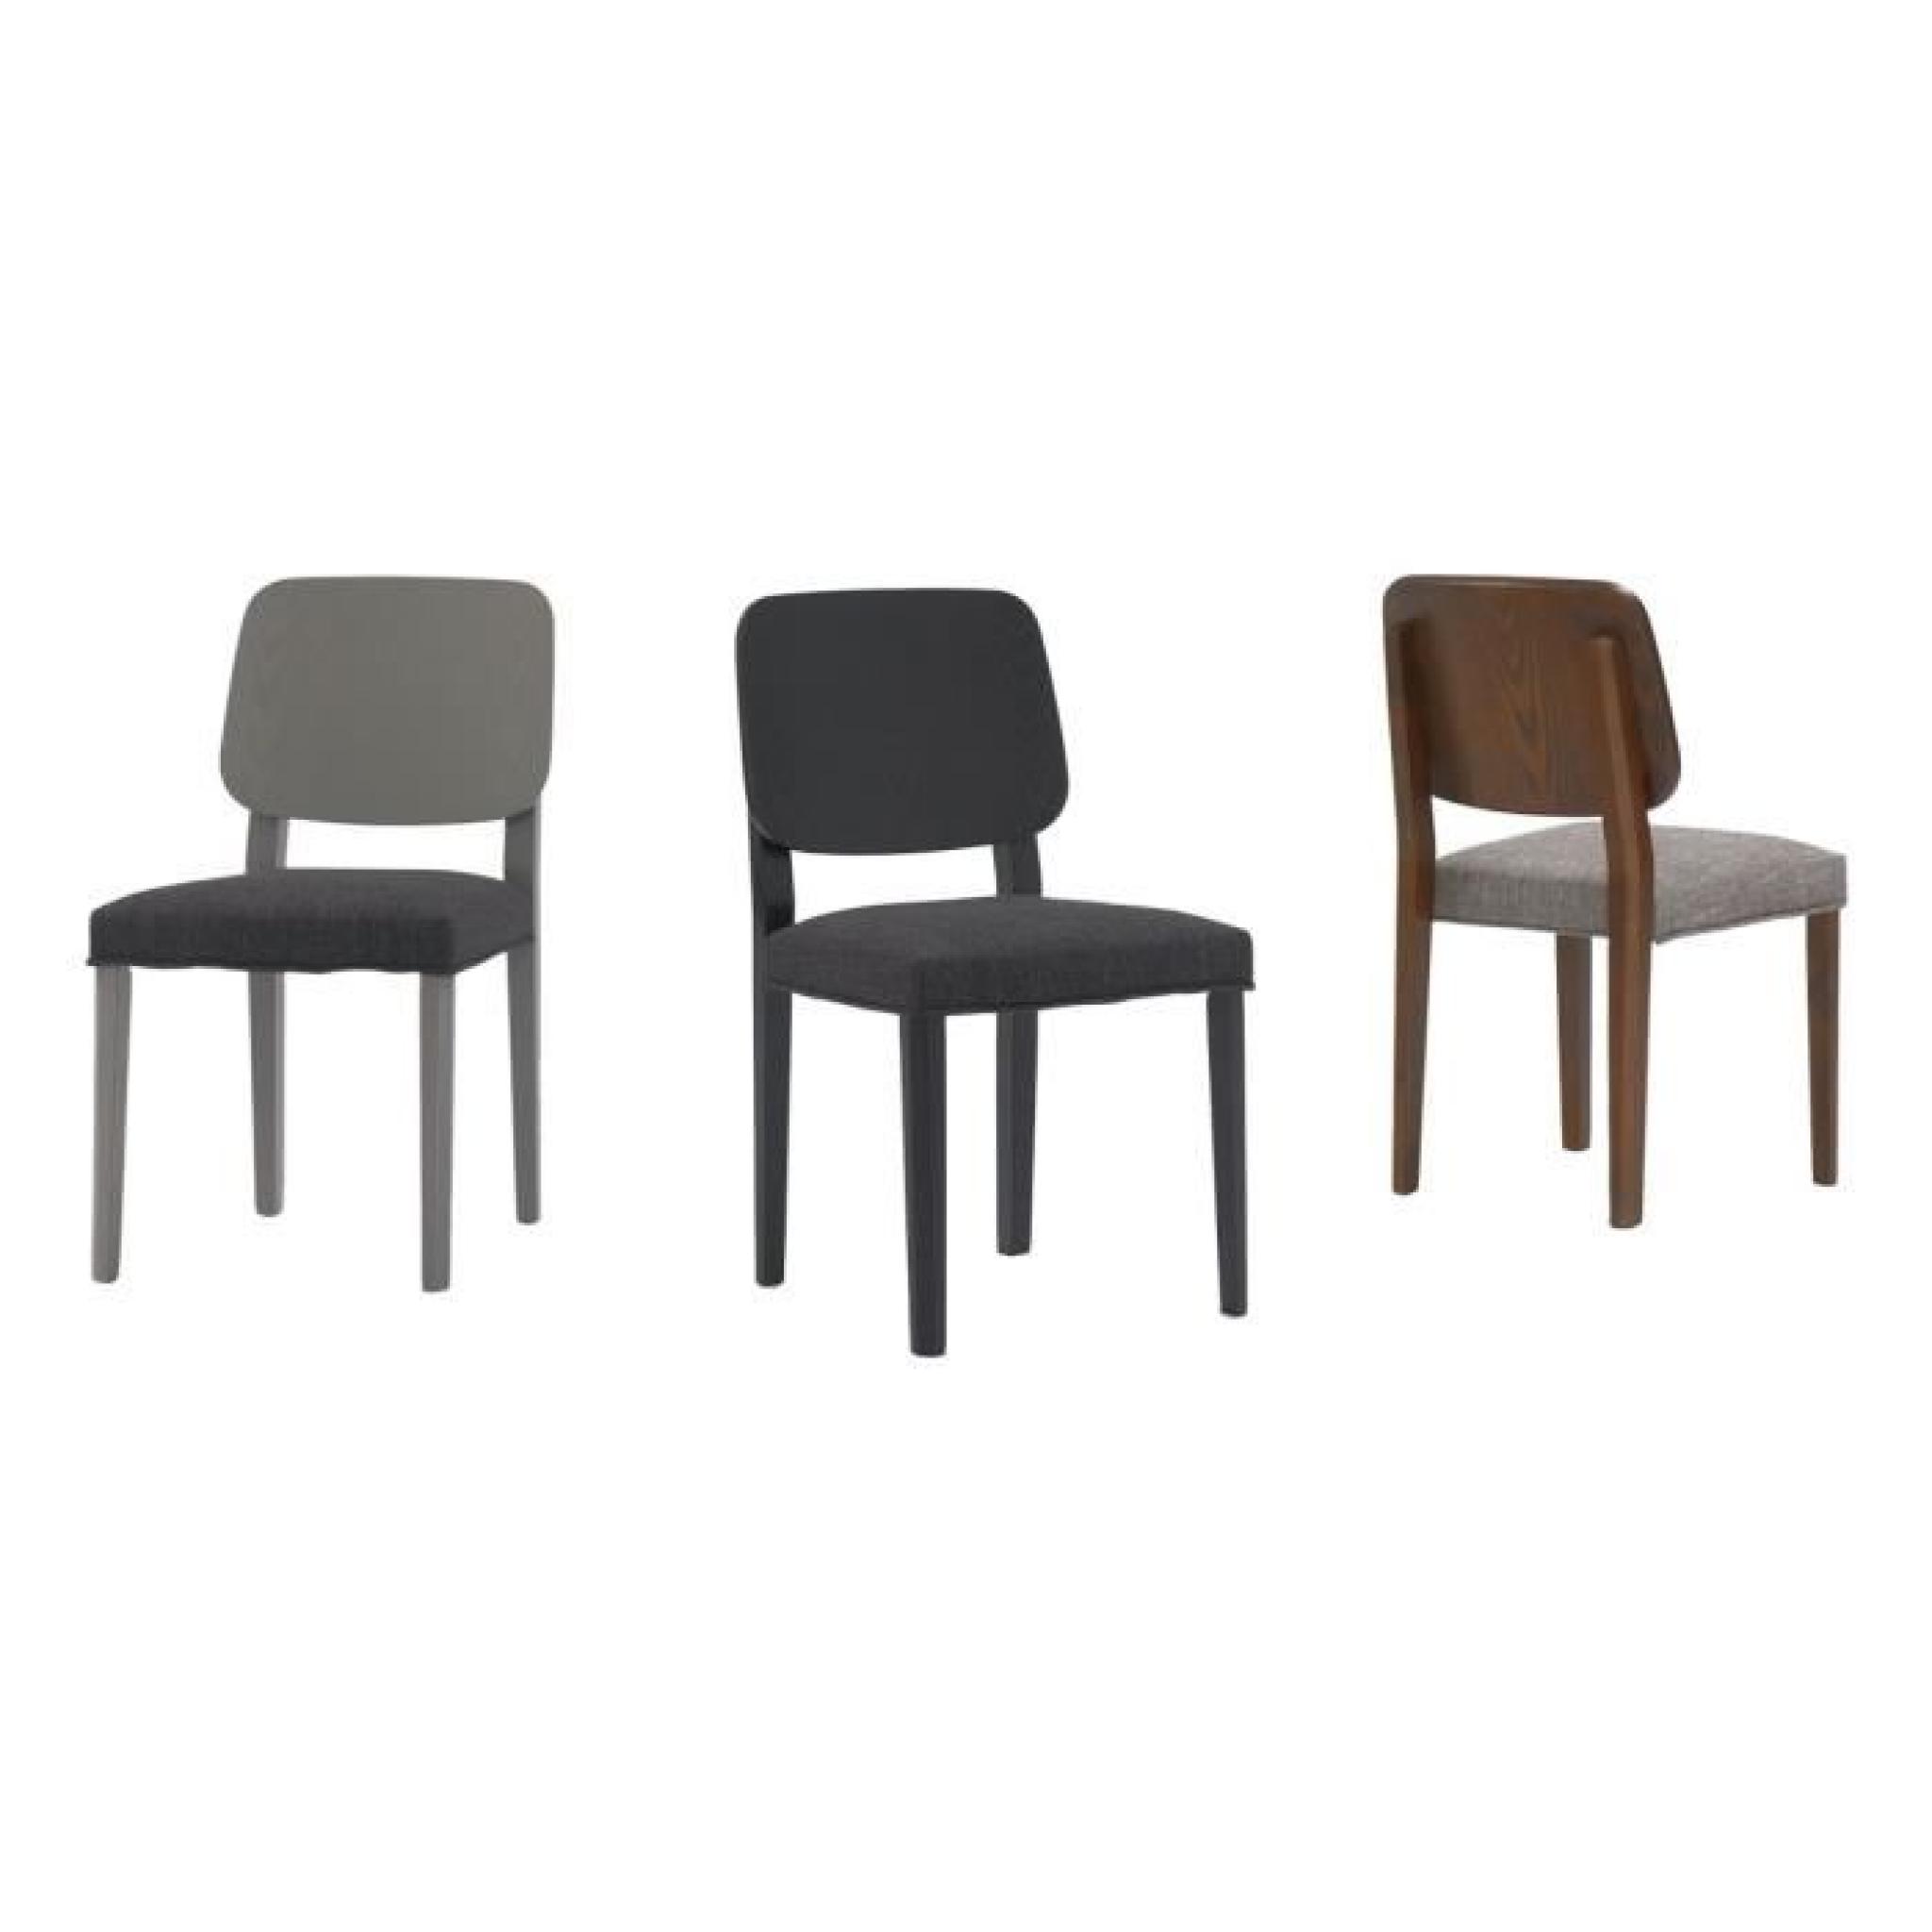 Miliboo - Lot de 2 chaises design bois gris TINA pas cher